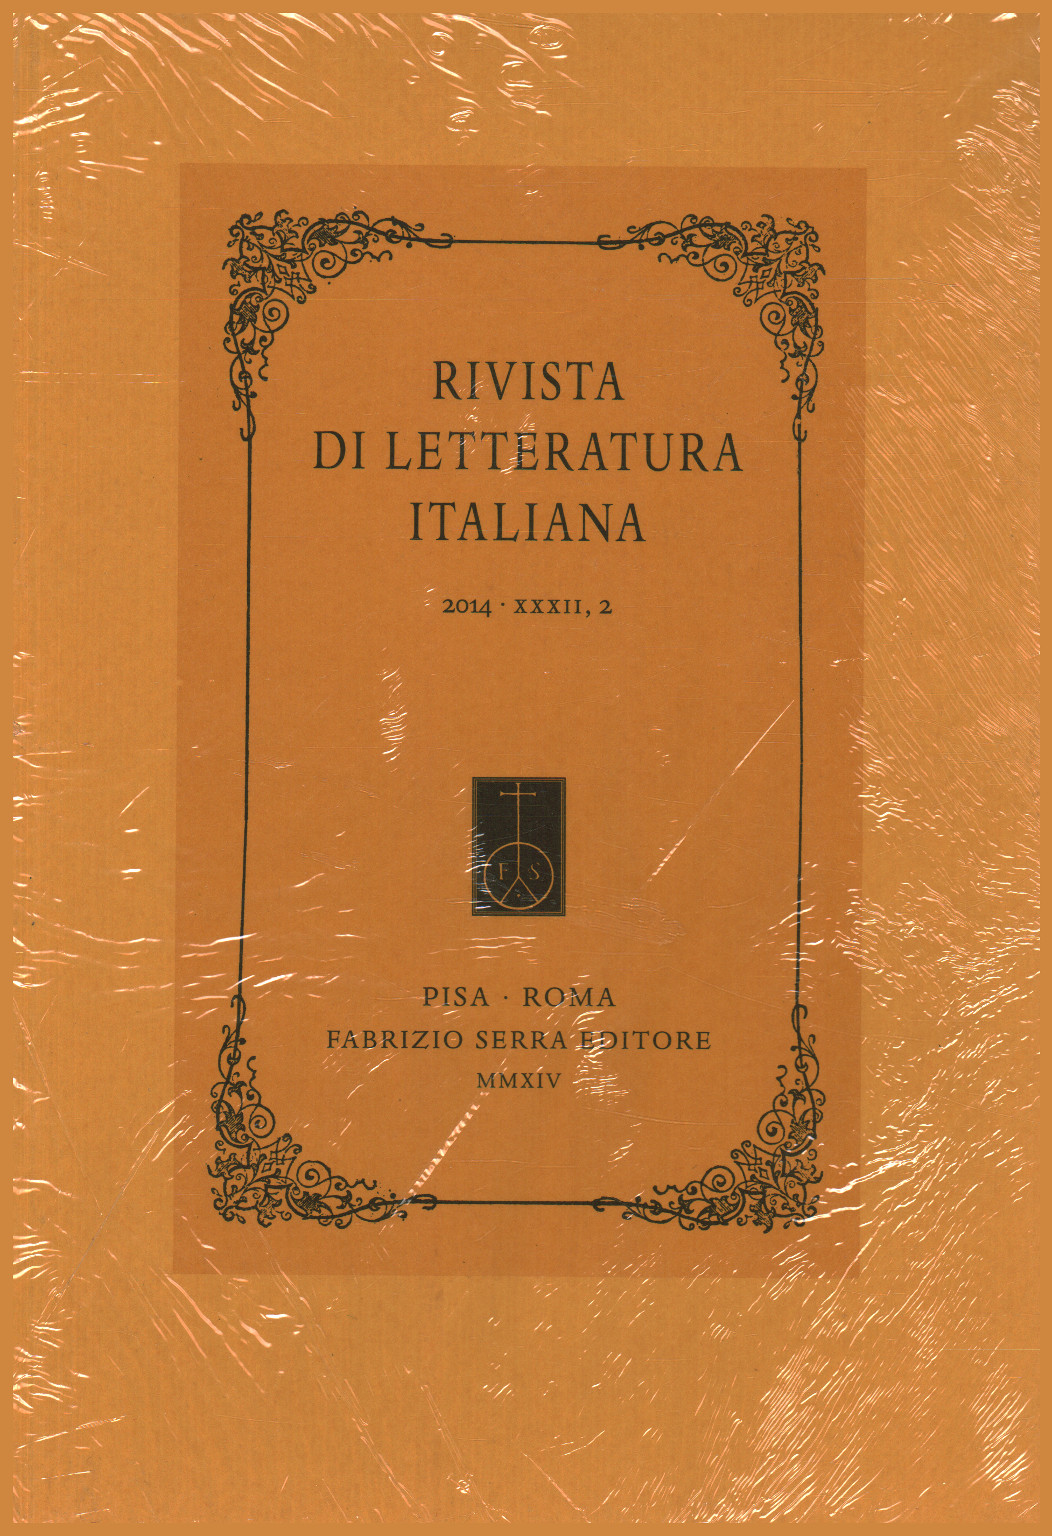 Zeitschrift für italienische literatur 2014,XXXII,2, s.zu.